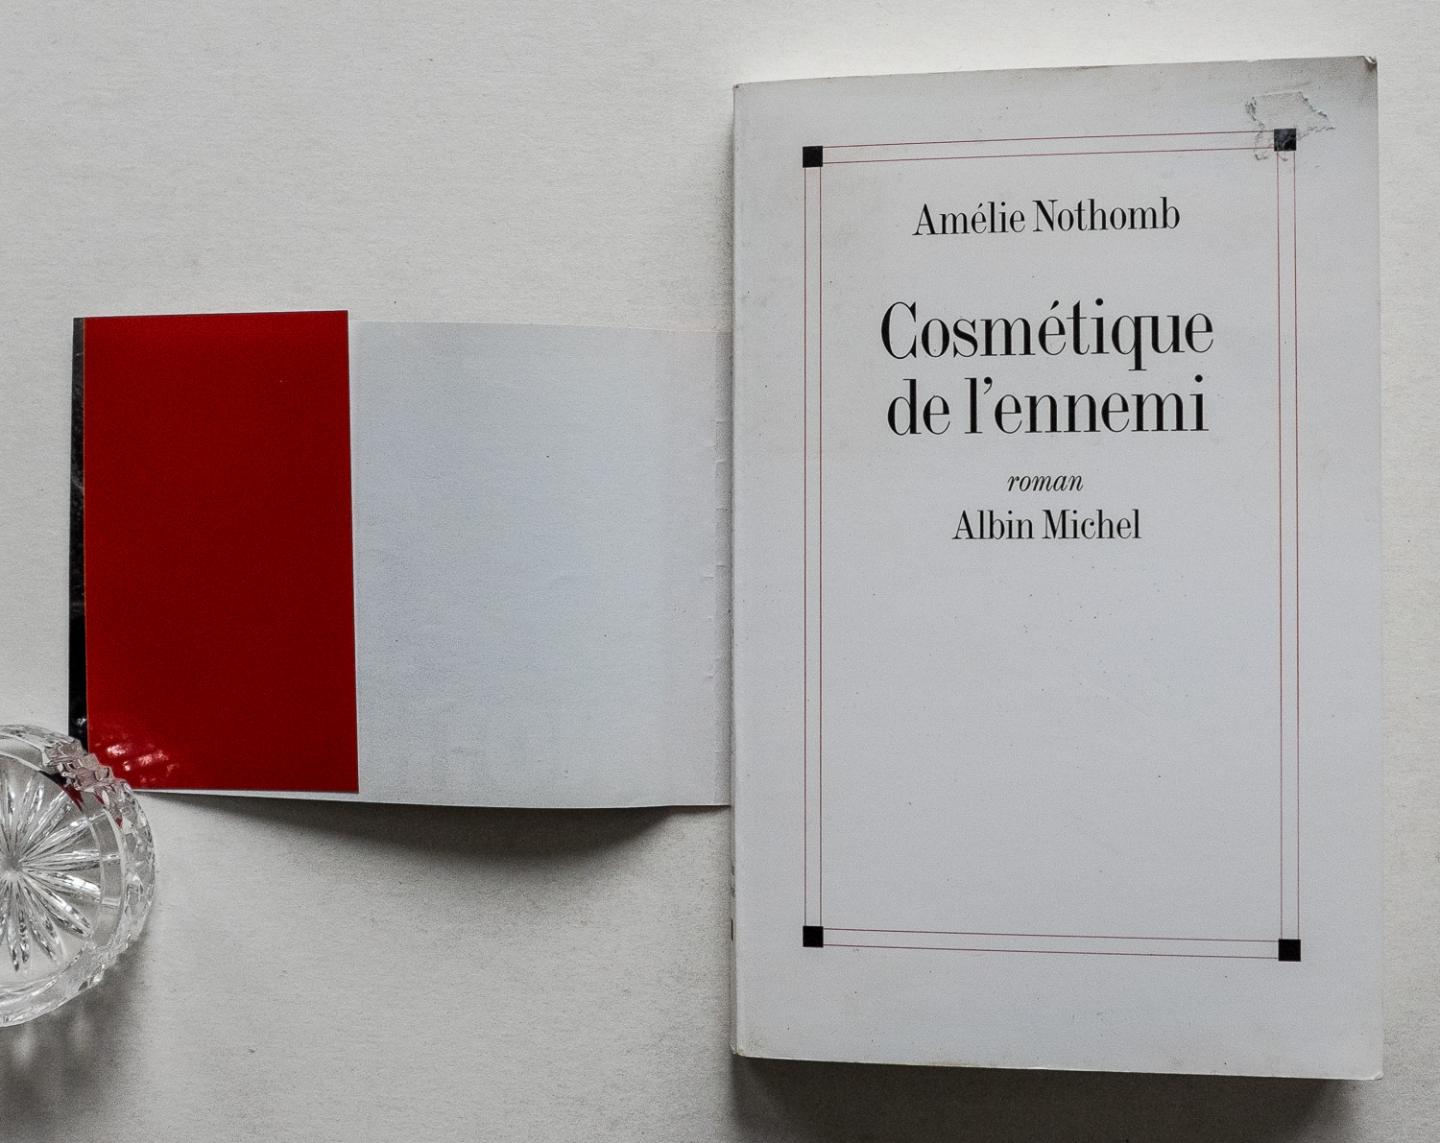 Nothomb, Amélie - Cosmétique de l'ennemi - roman